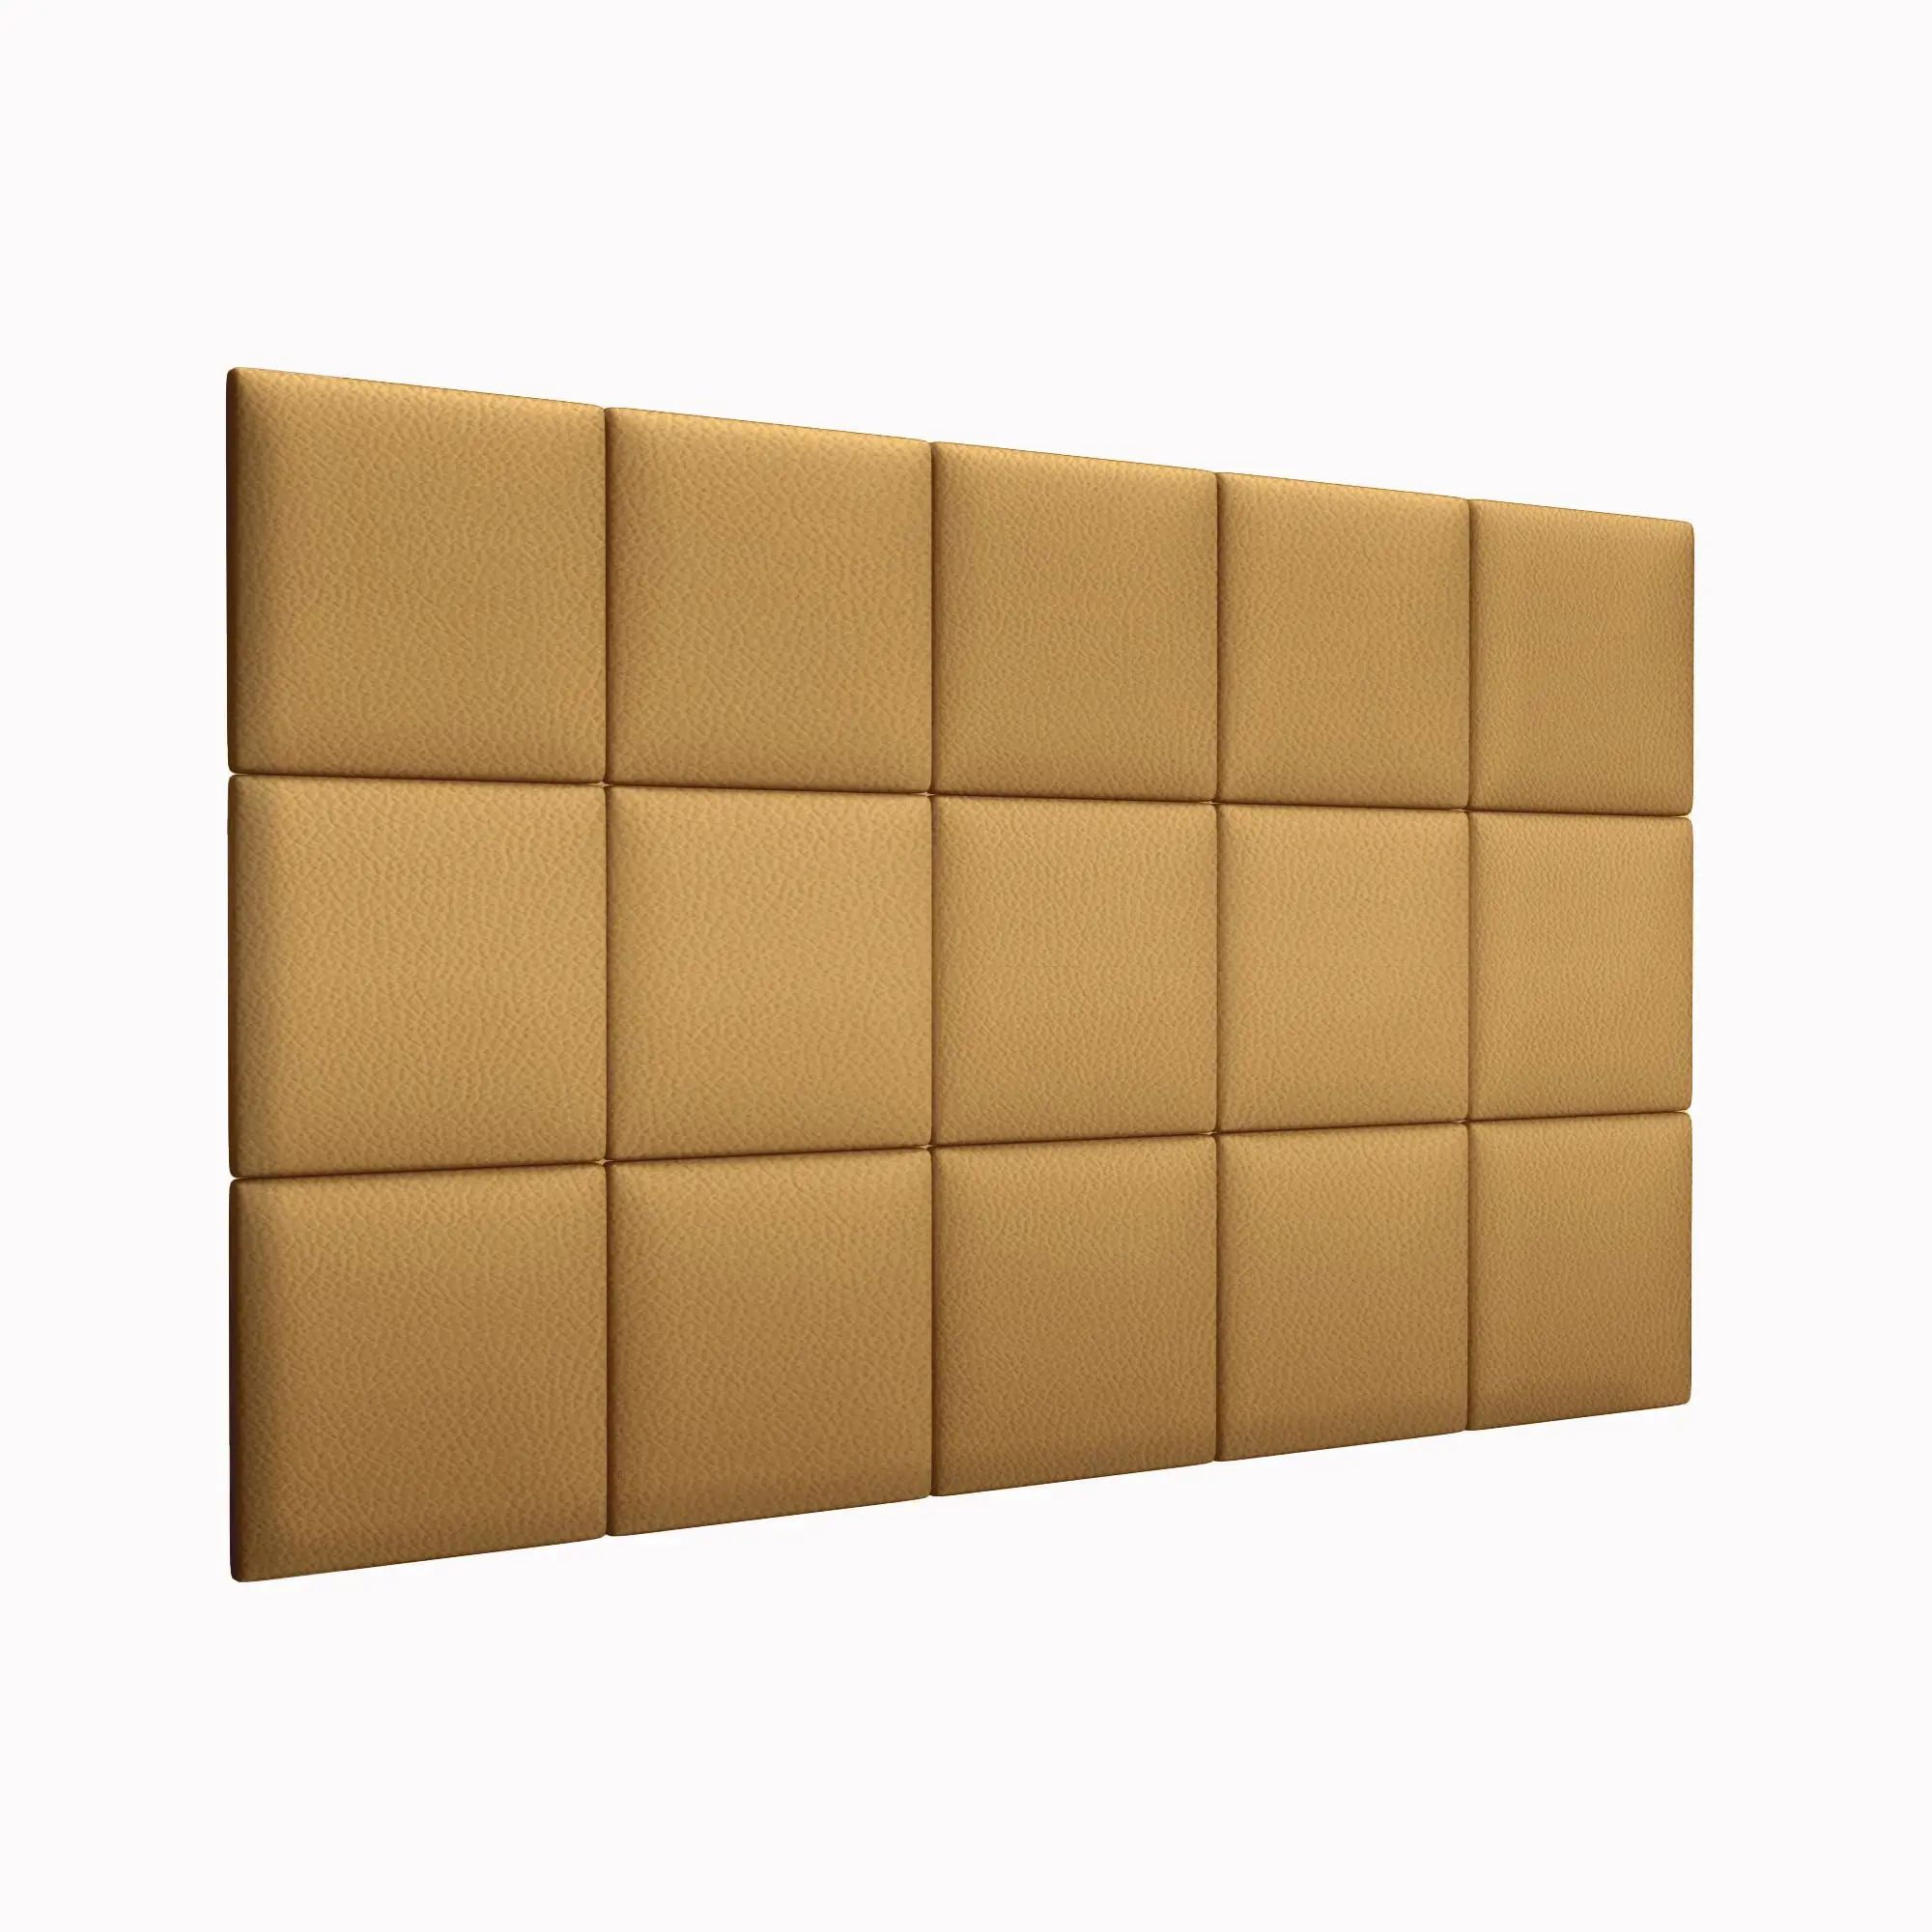 Стеновая панель Eco Leather Gold 30х30 см 2 шт. декор ascot ceramiche glamourwall gmcx10 calacatta mix сд154рк 30х30 см